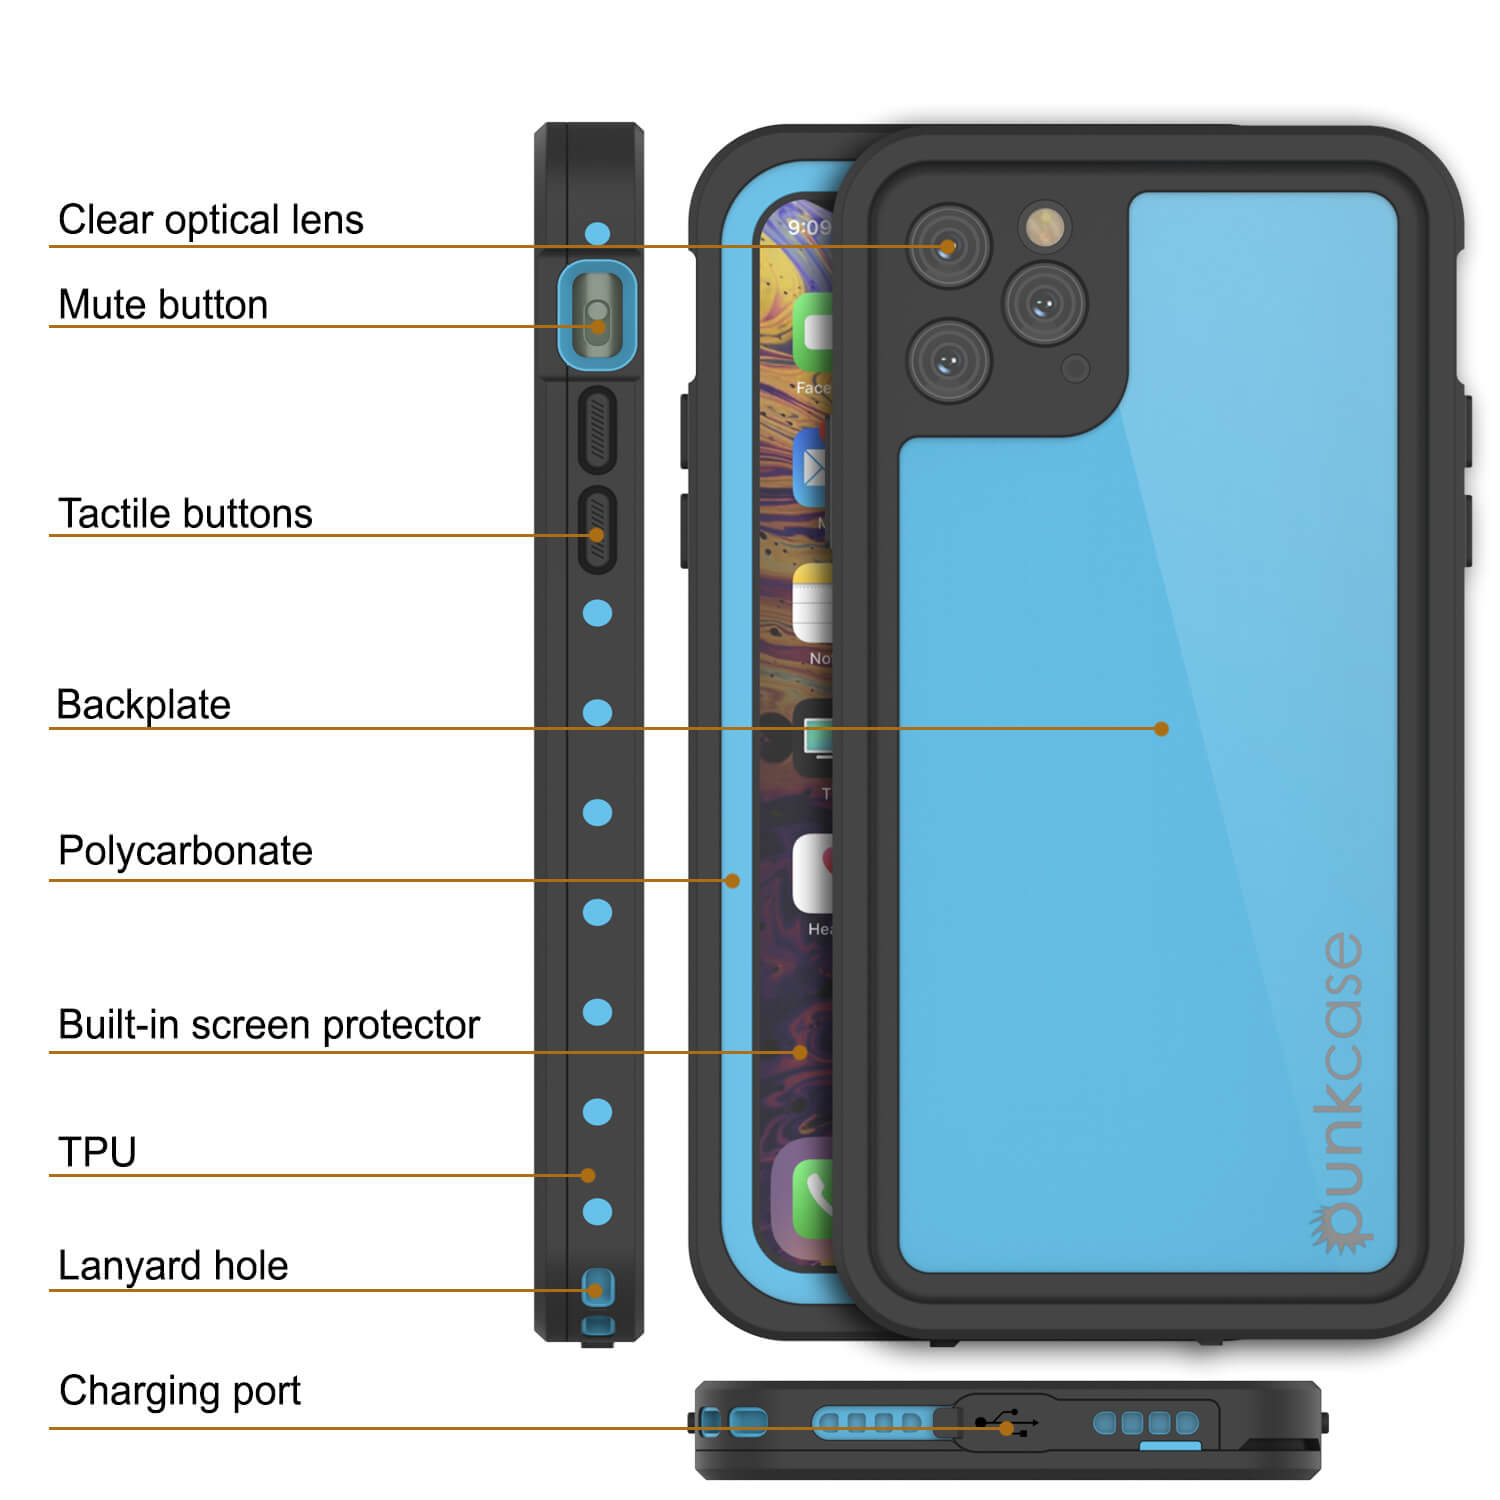 Lunatik Strike iPhone 11 Pro Max Bumper Case